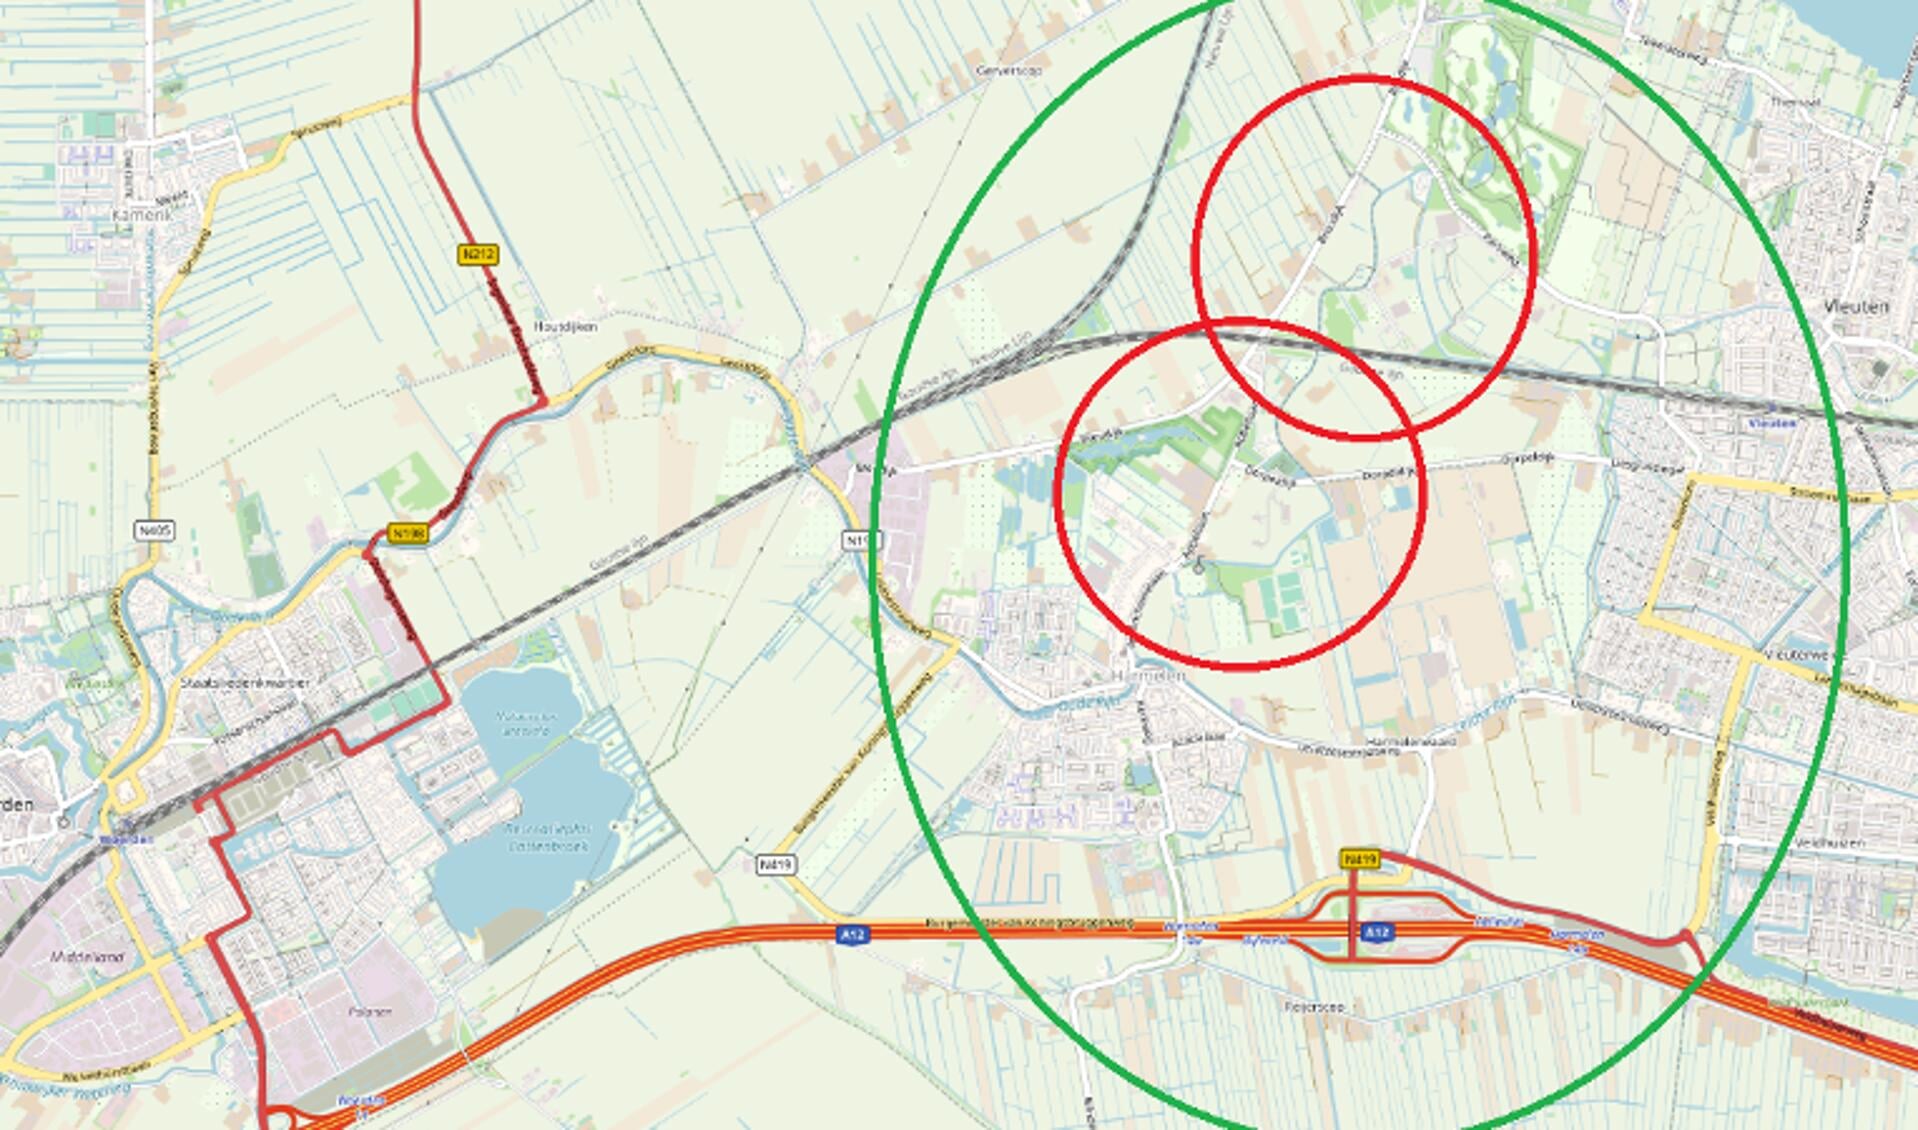 Vermoedelijke fietsroute van het meisje (groene cirkel), politie zoekt getuigen en beelden uit dit gebied, met name uit het gebied van de rode cirkels